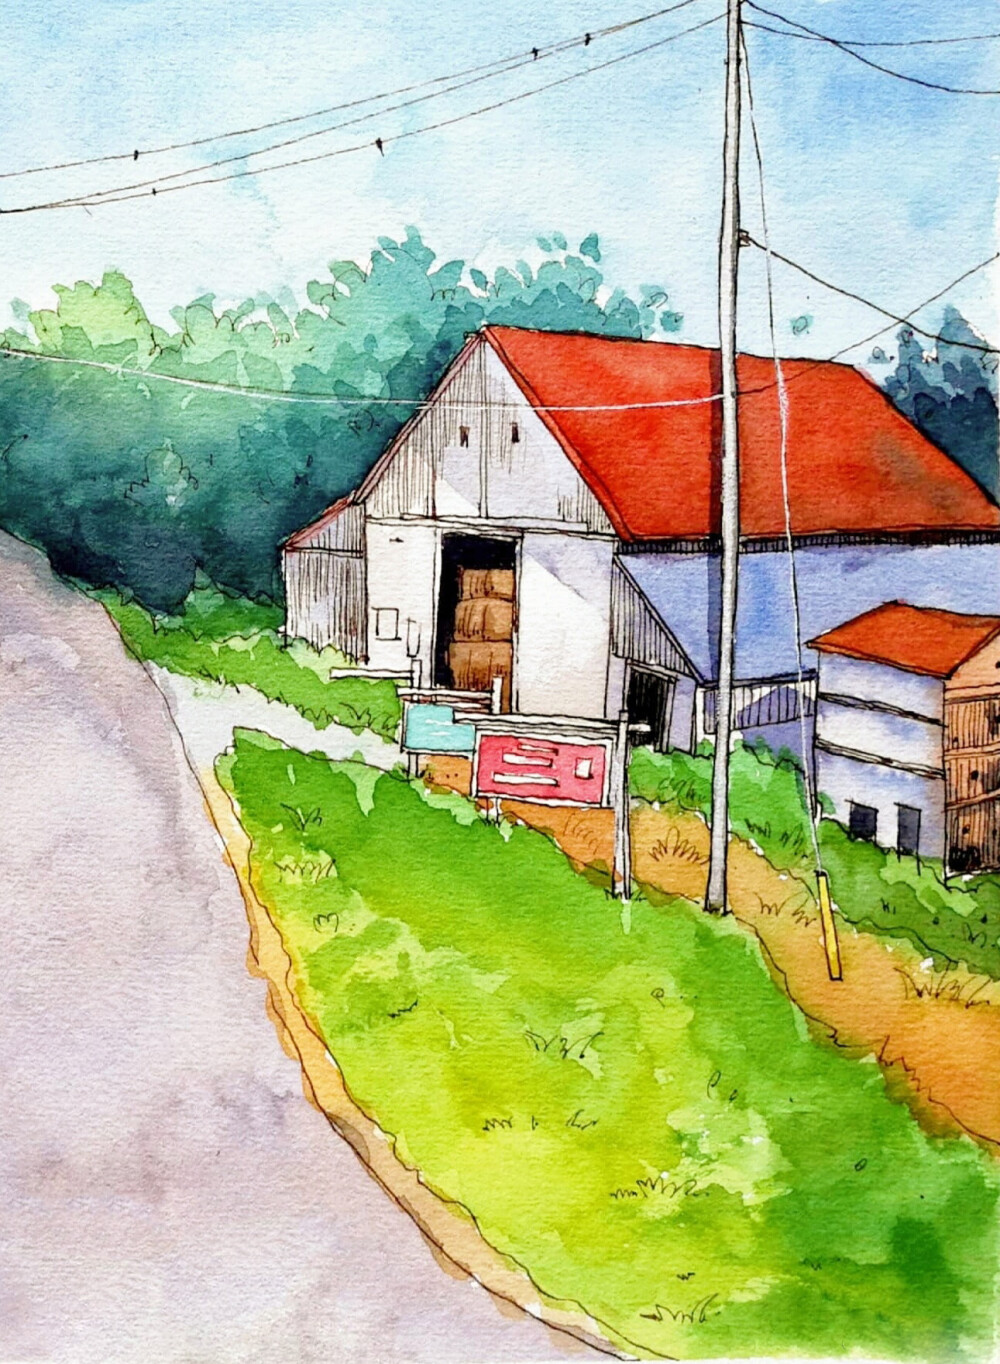 日本动画风景房子 - 堆糖,美图壁纸兴趣社区